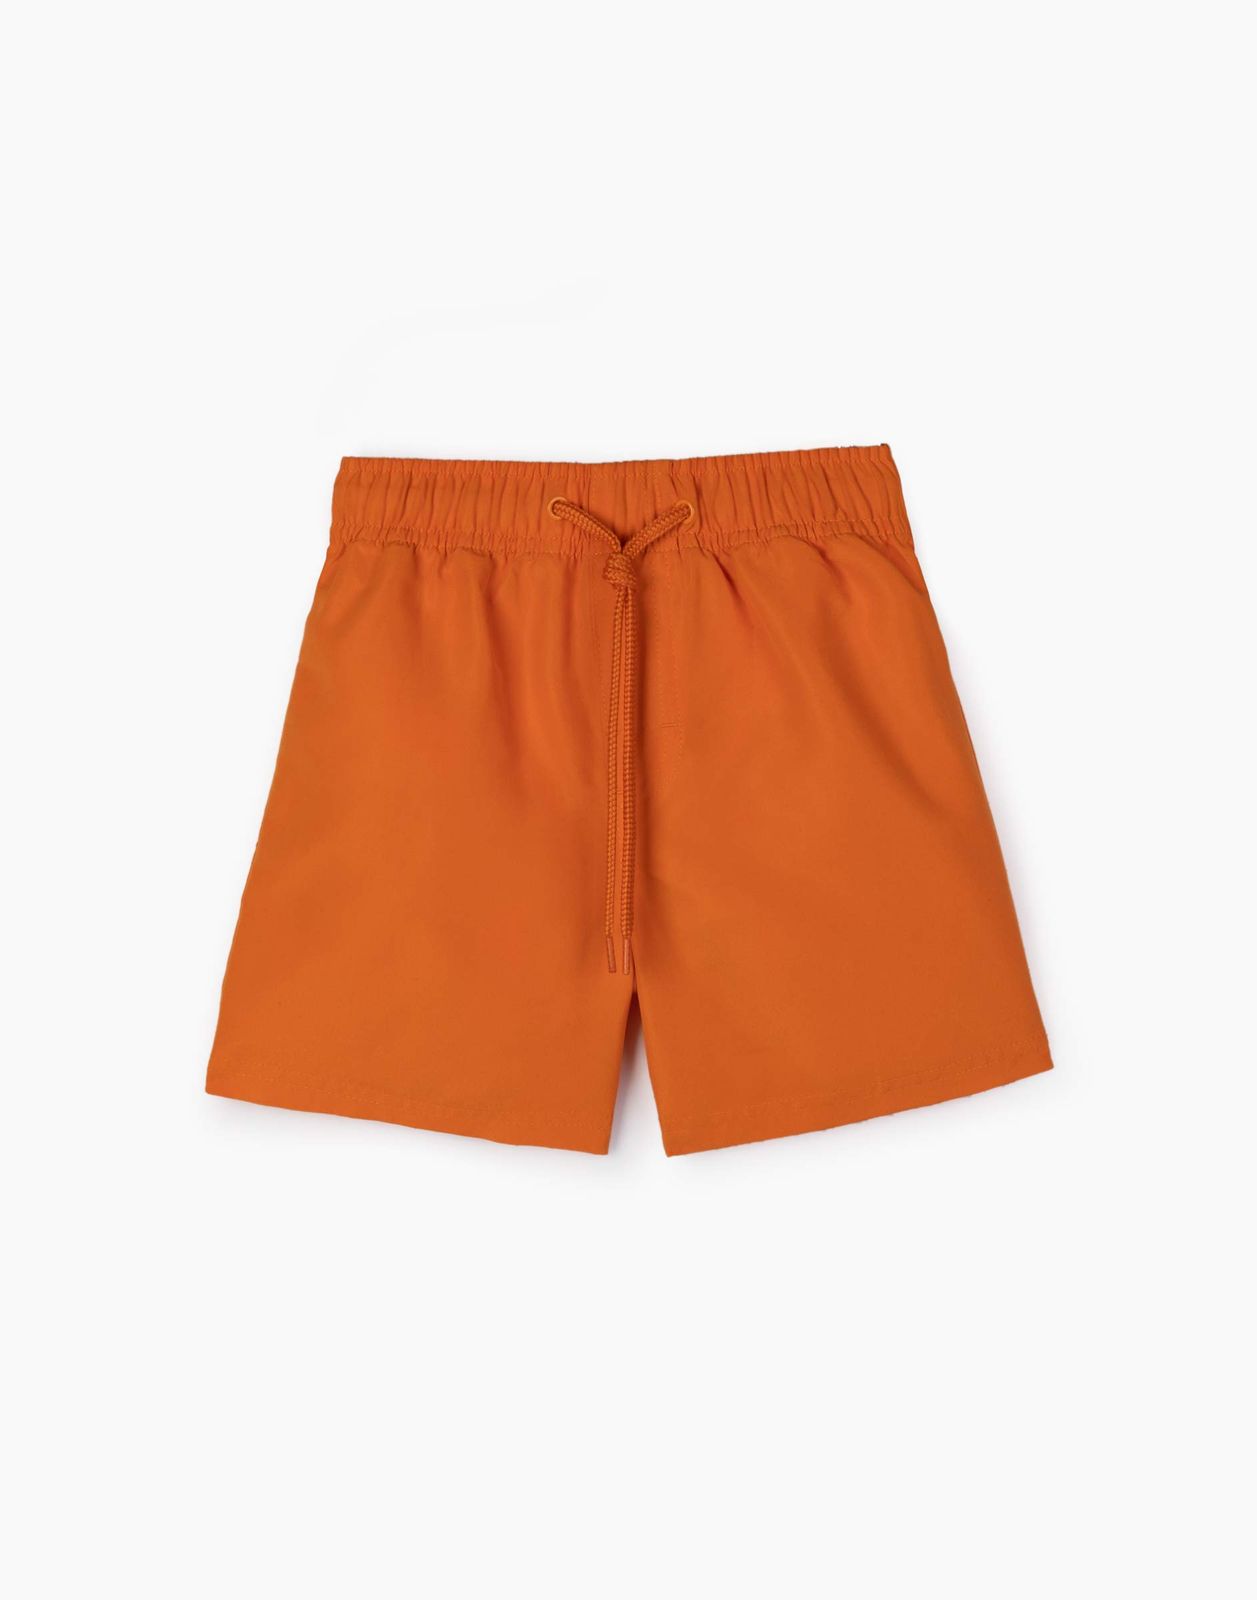 Пляжные шорты для мальчика Gloria Jeans BSM000720 оранжевый 6-8л/128